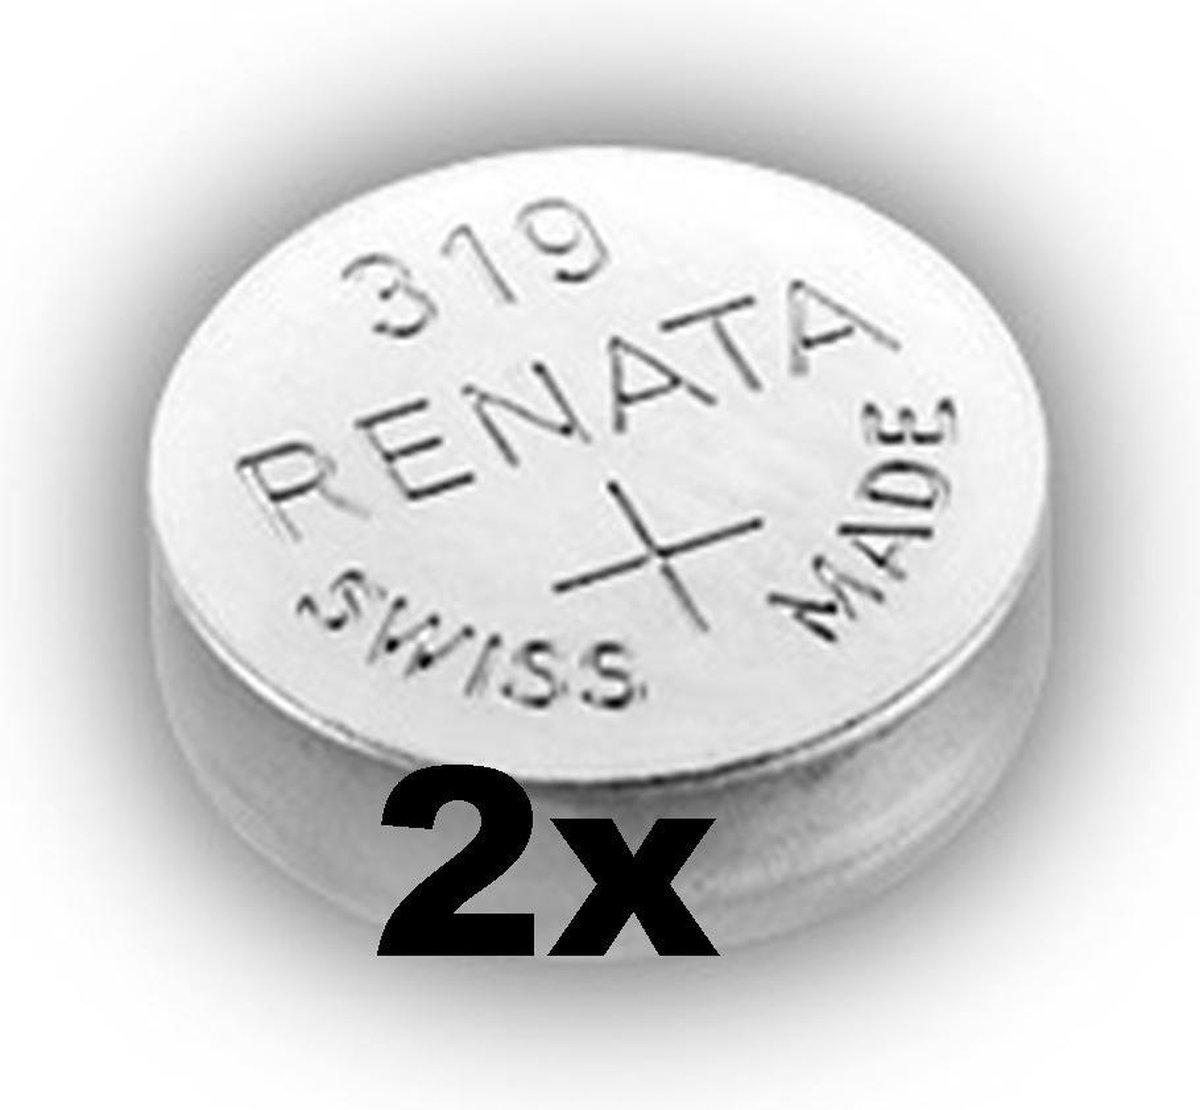 Renata 319 / SR527SW zilveroxide knoopcel horlogebatterij 2 (twee) stuks